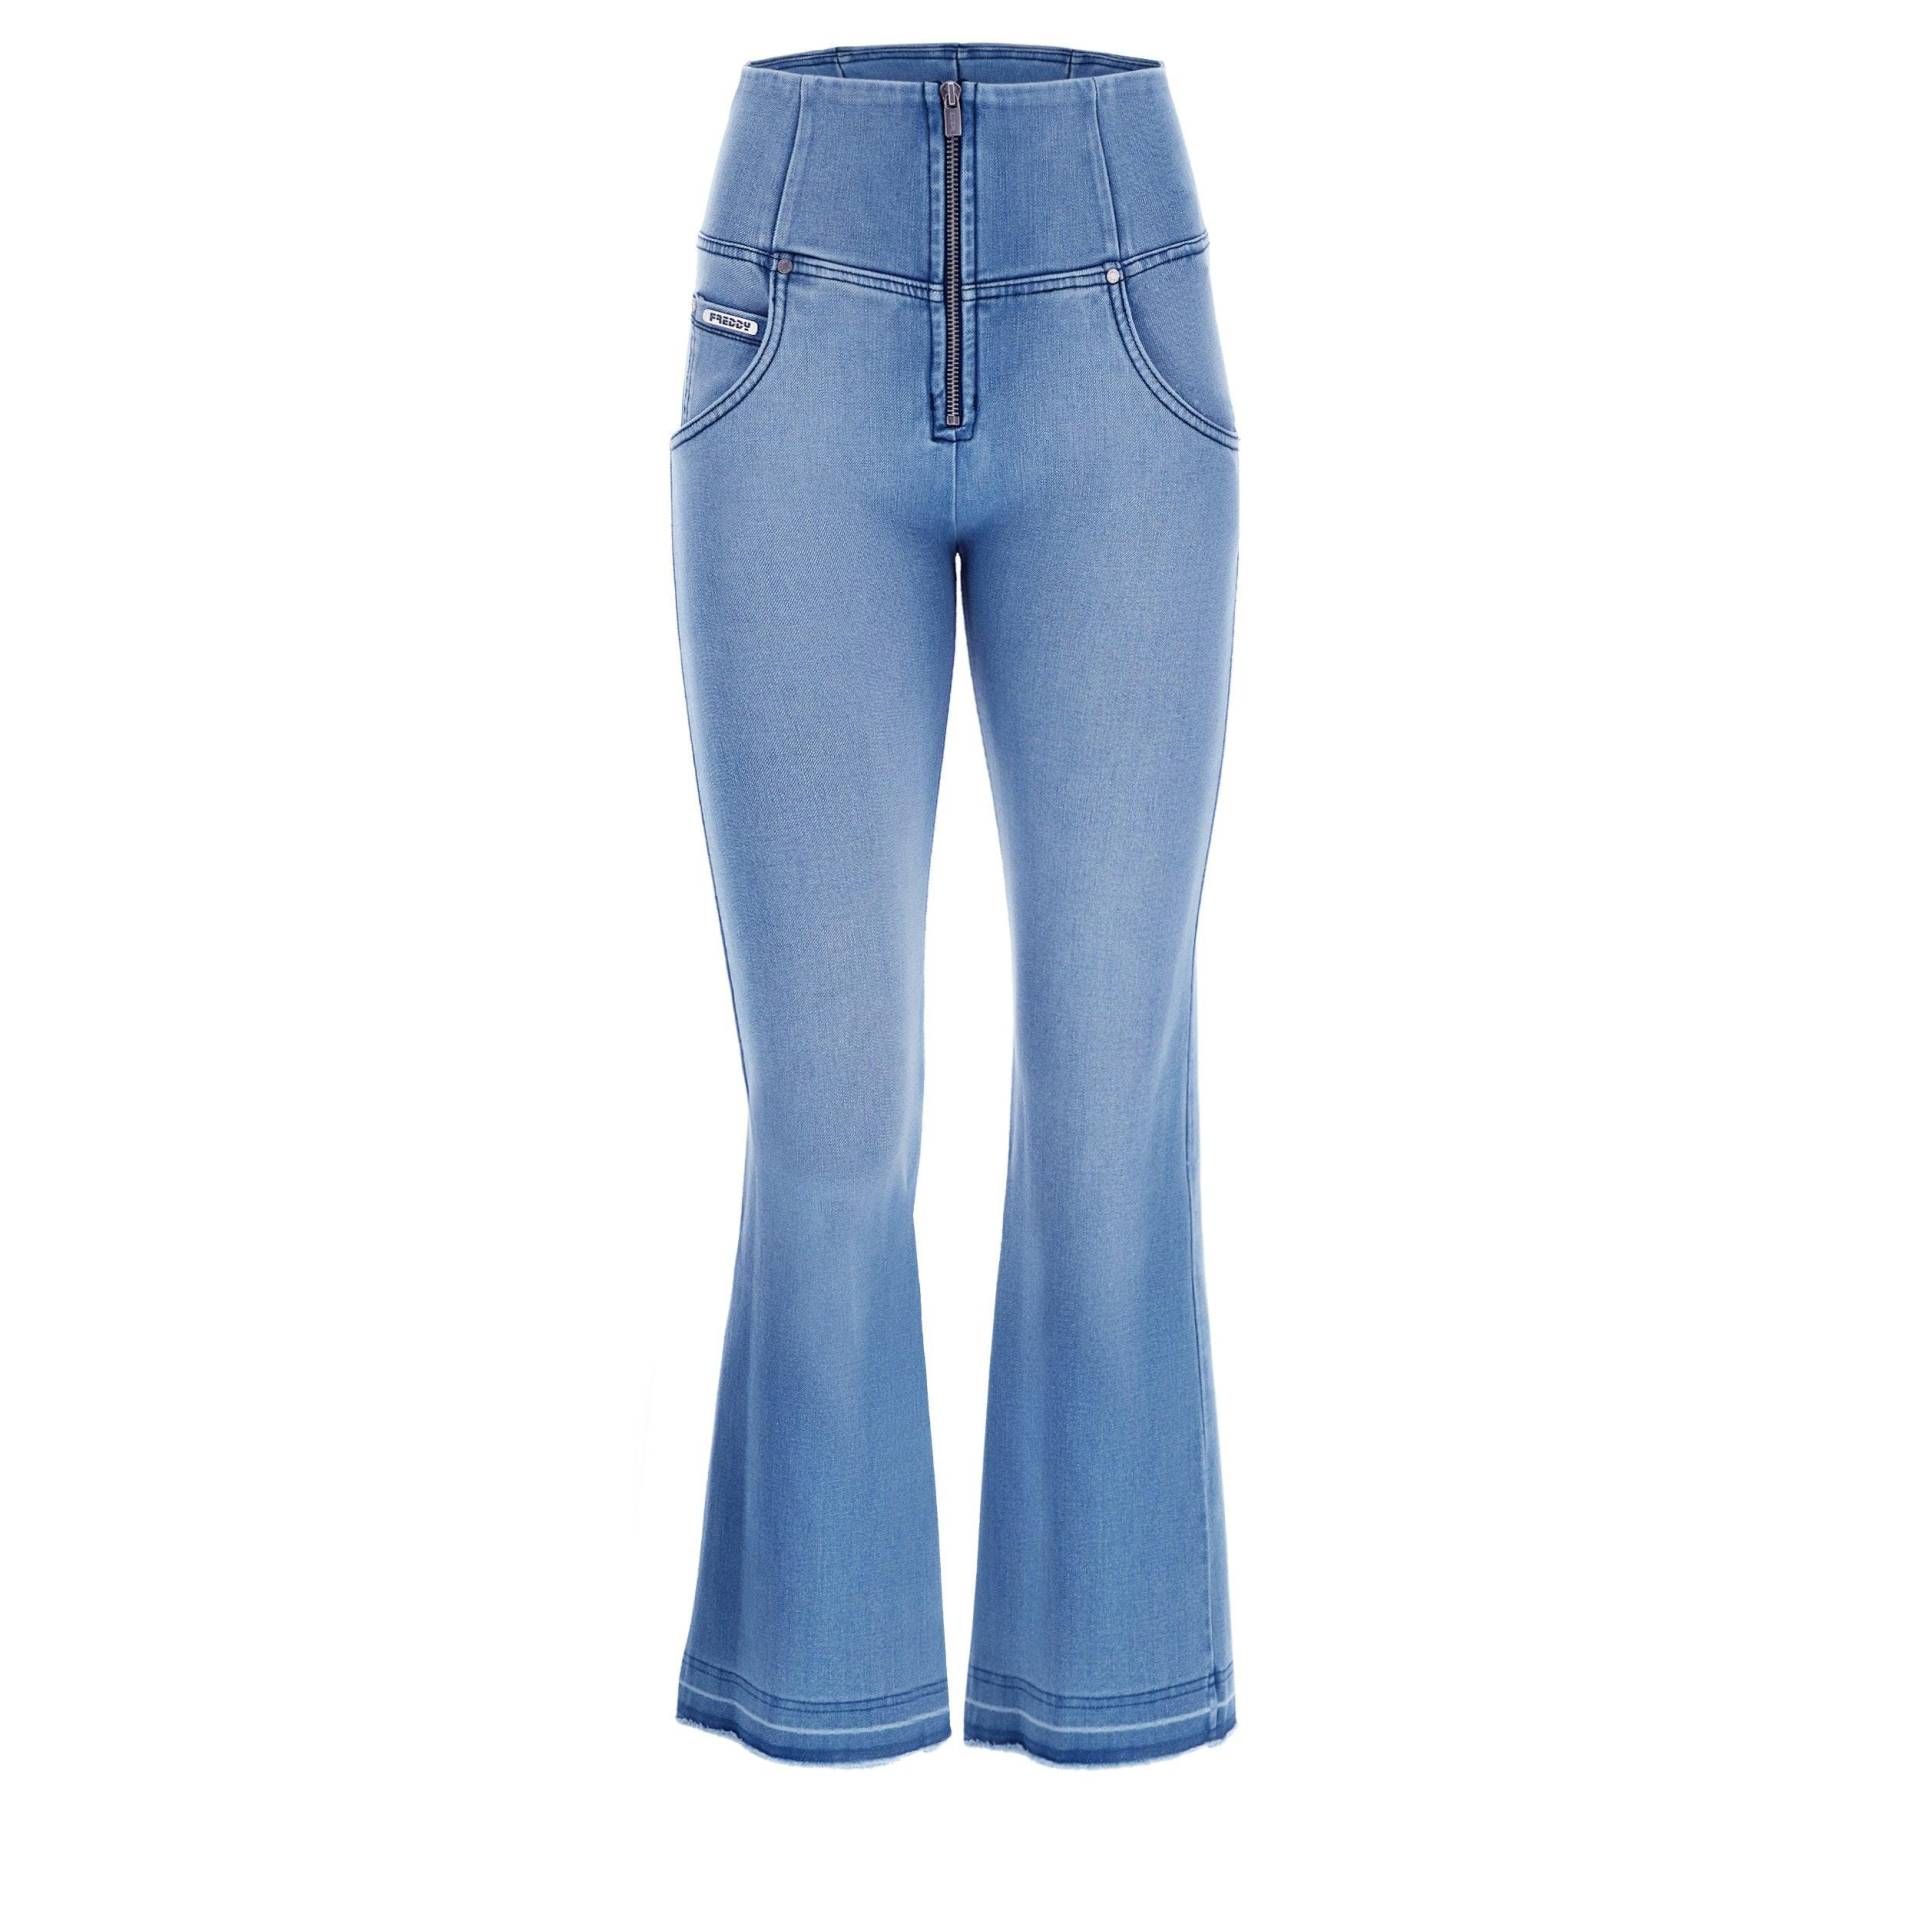 Wr.up® Push-up-jeans In 7/8-länge Mit Flared-saum Und Raw-edge-effekt Damen Blau Denim M von FREDDY